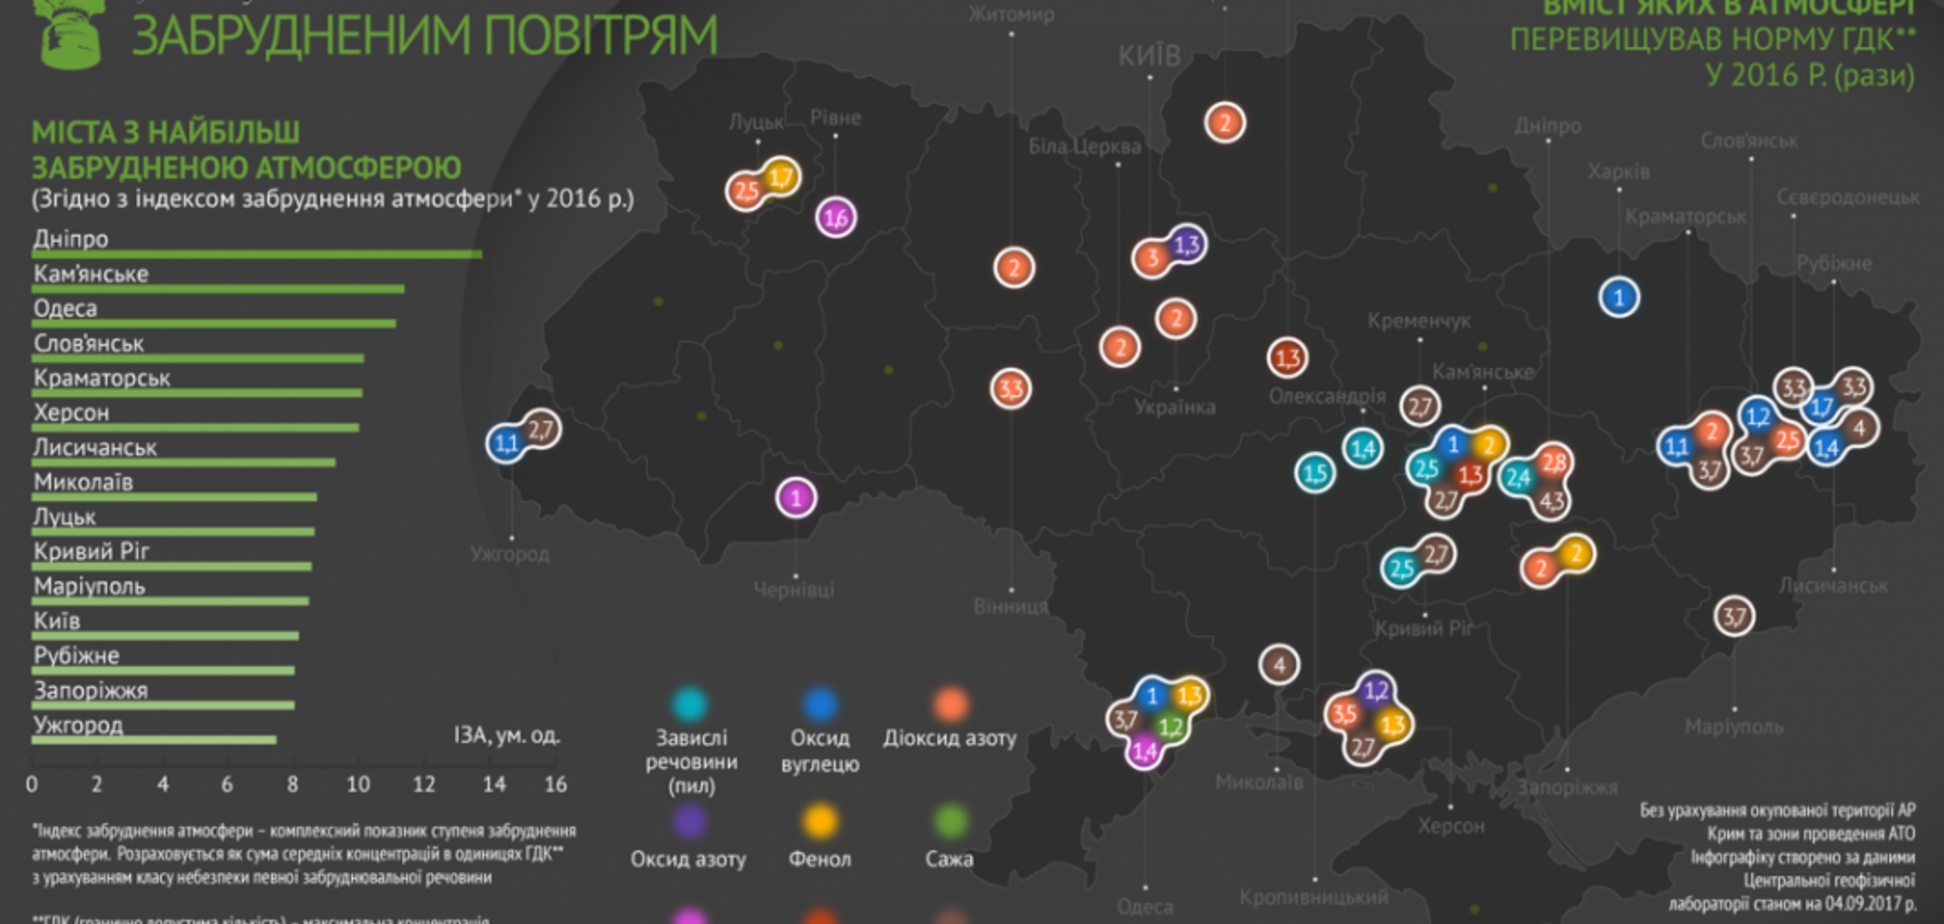 Днепр и Одесса по загрязнению оставили Мариуполь далеко в хвосте: опубликована карта 